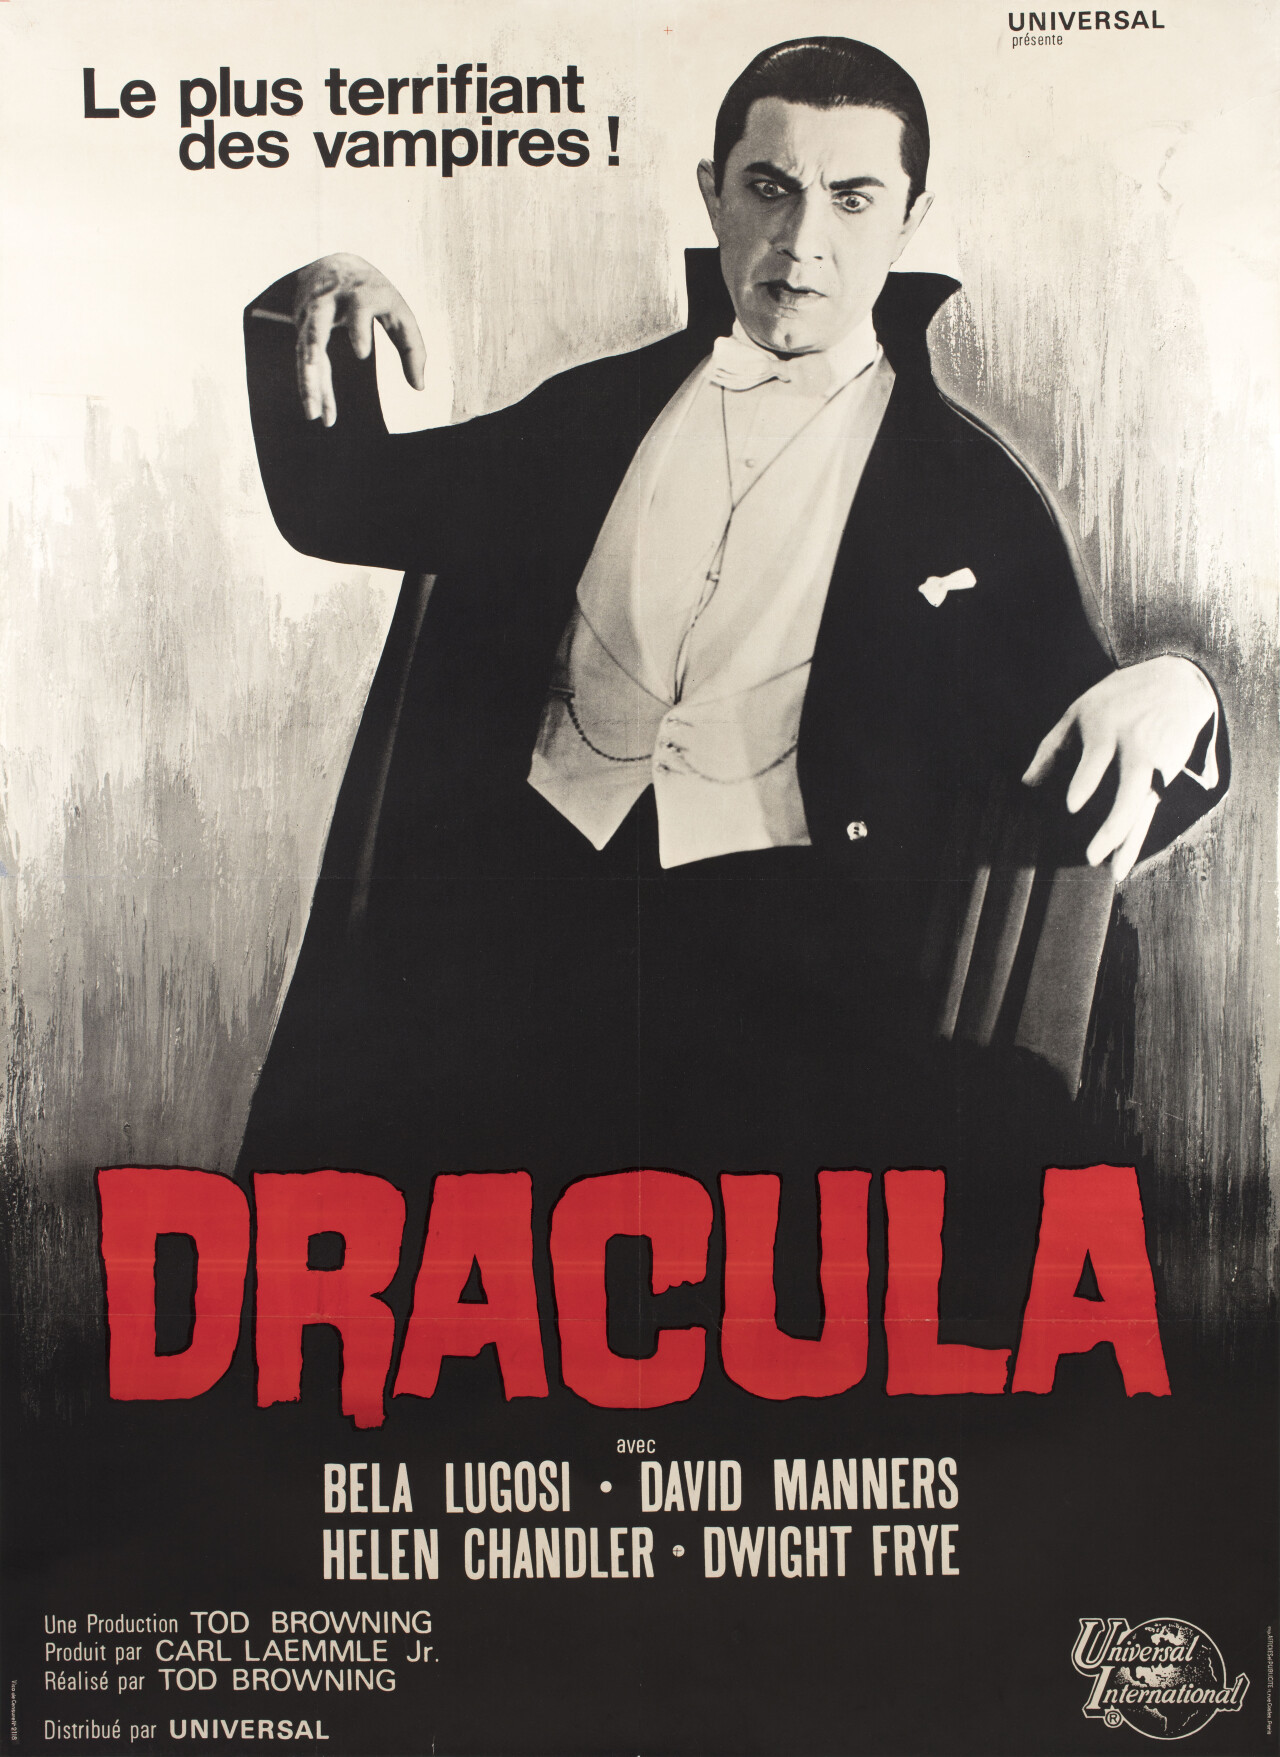 Дракула (Dracula, 1931), режиссёр Тод Браунинг, французский постер к фильму (ужасы, 1960 год)